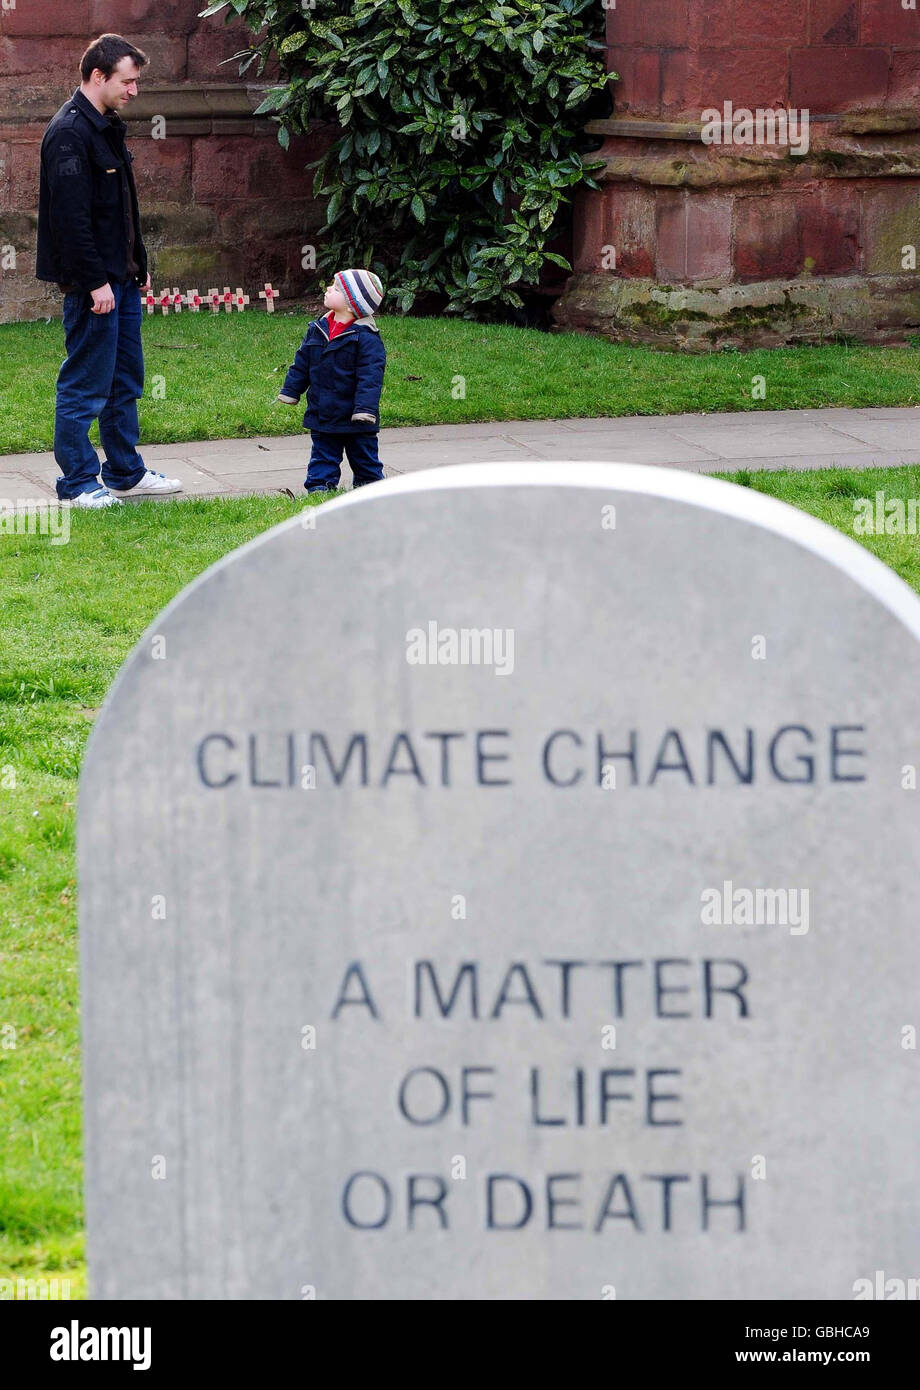 Les visiteurs se trouvent à proximité d'une tombe factice avec l'inscription « changement climatique, UNE question de vie ou de mort », à l'extérieur de la cathédrale de Coventry. La tombe a été placée là pour mettre en évidence l'effet négatif du changement climatique sur les personnes vivant dans les pays en développement. Banque D'Images